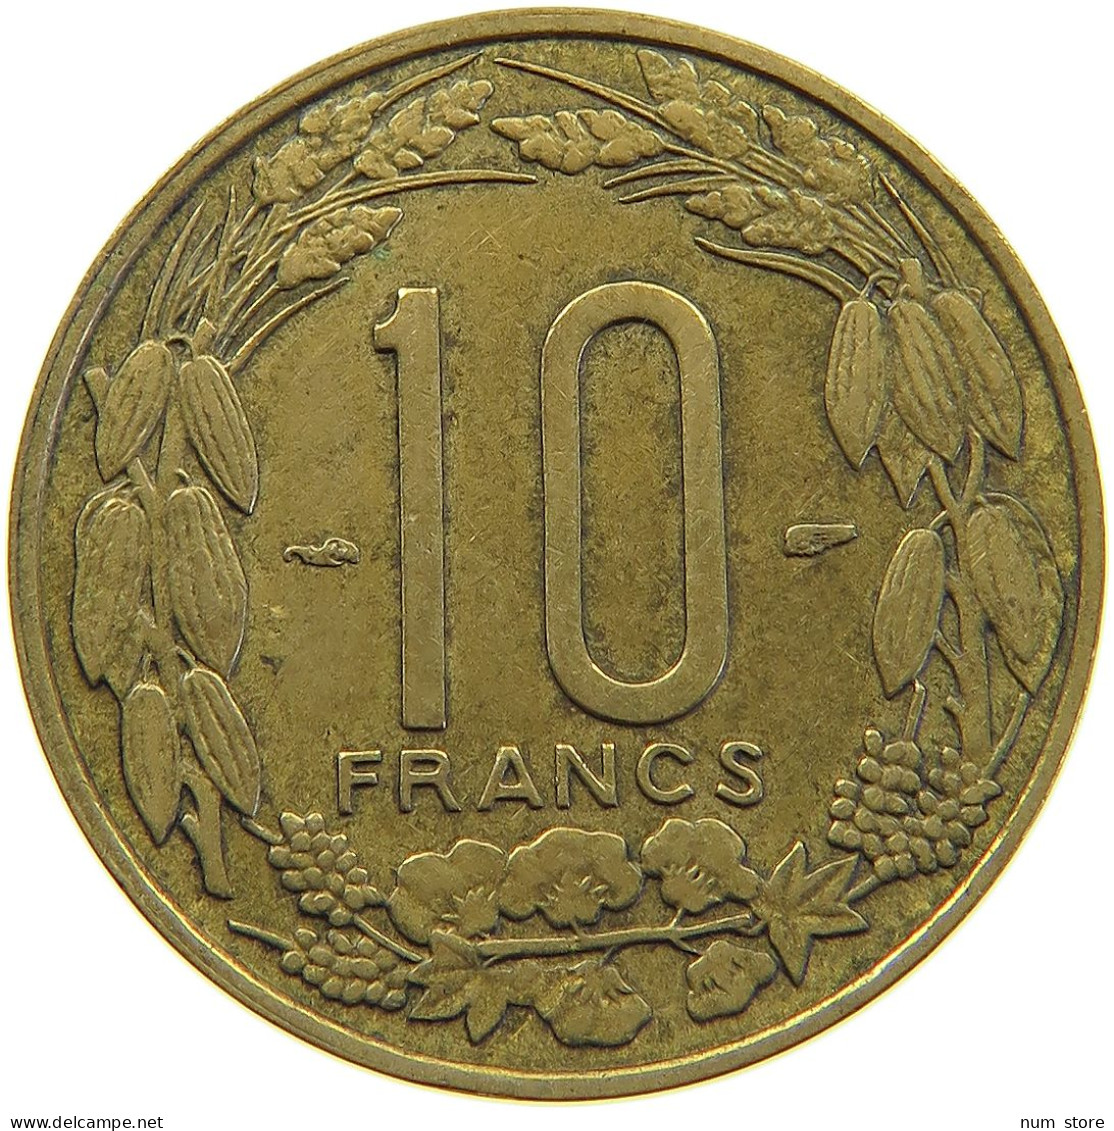 CAMEROON 10 FRANCS 1958  #c067 0365 - Kameroen